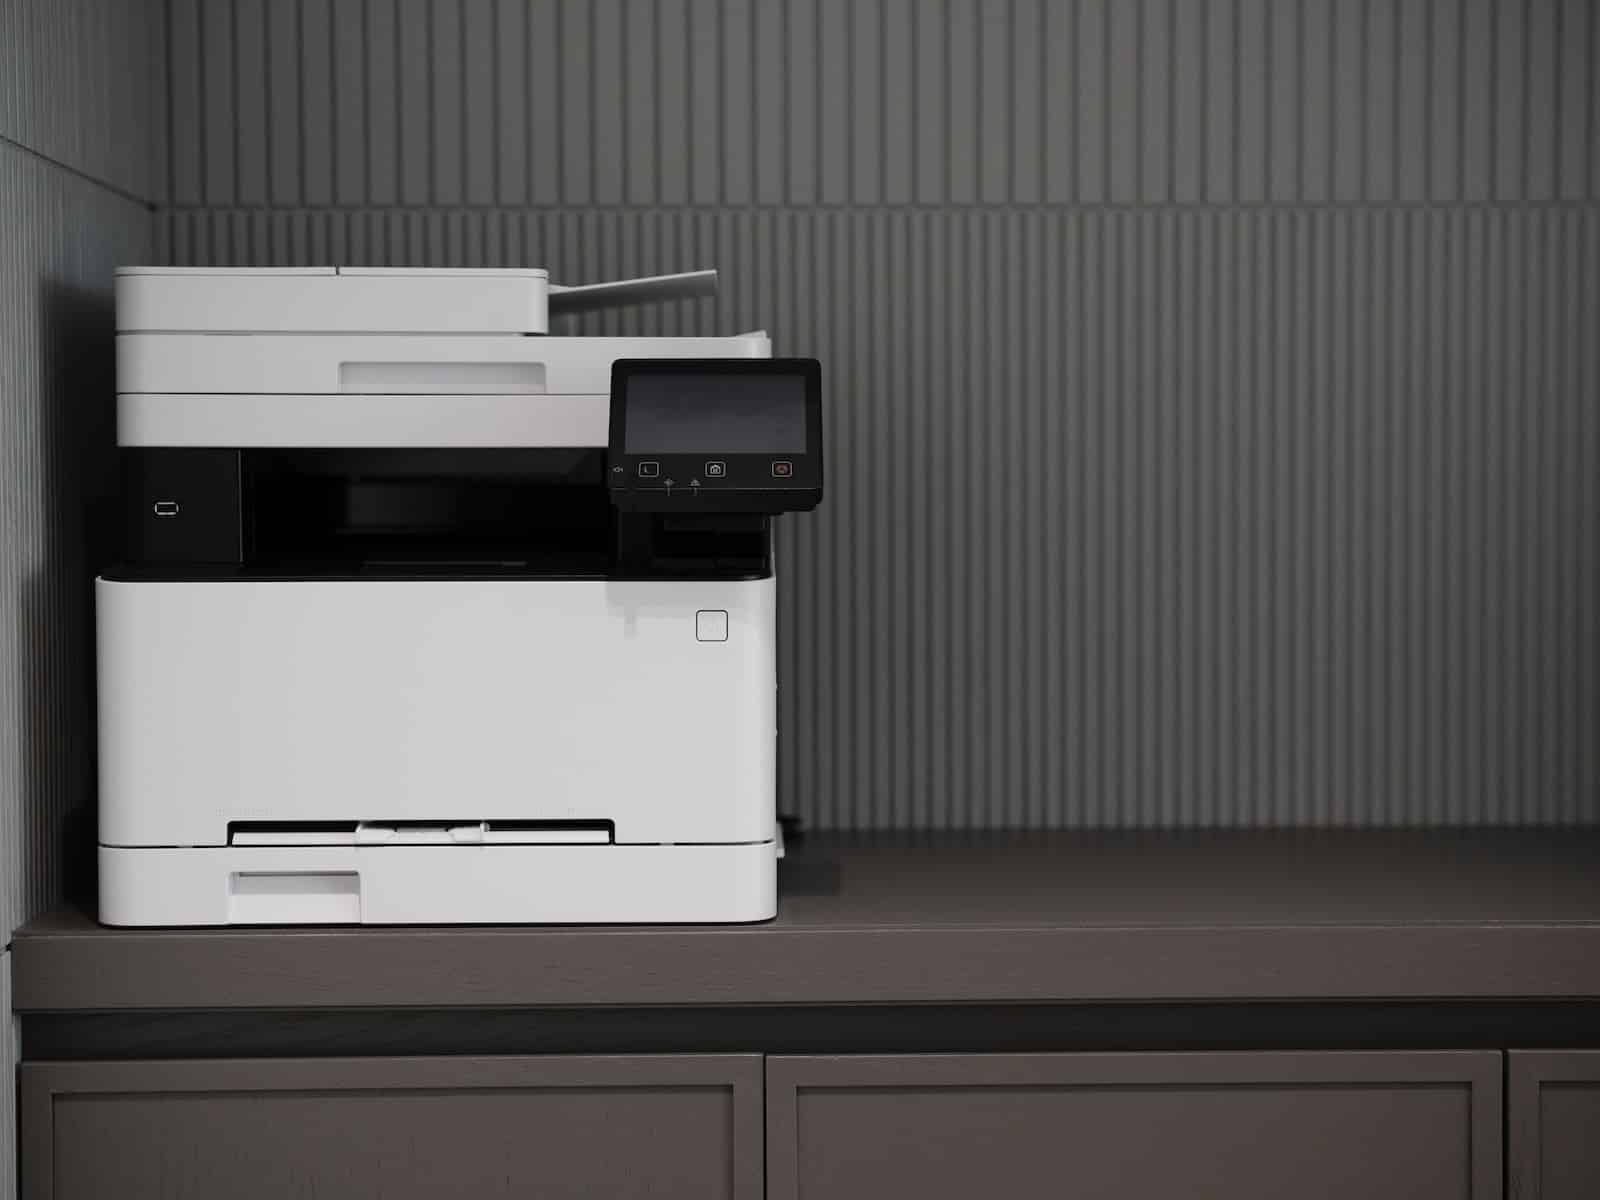 Comment faire croire à l'imprimante HP que la cartouche est pleine ?